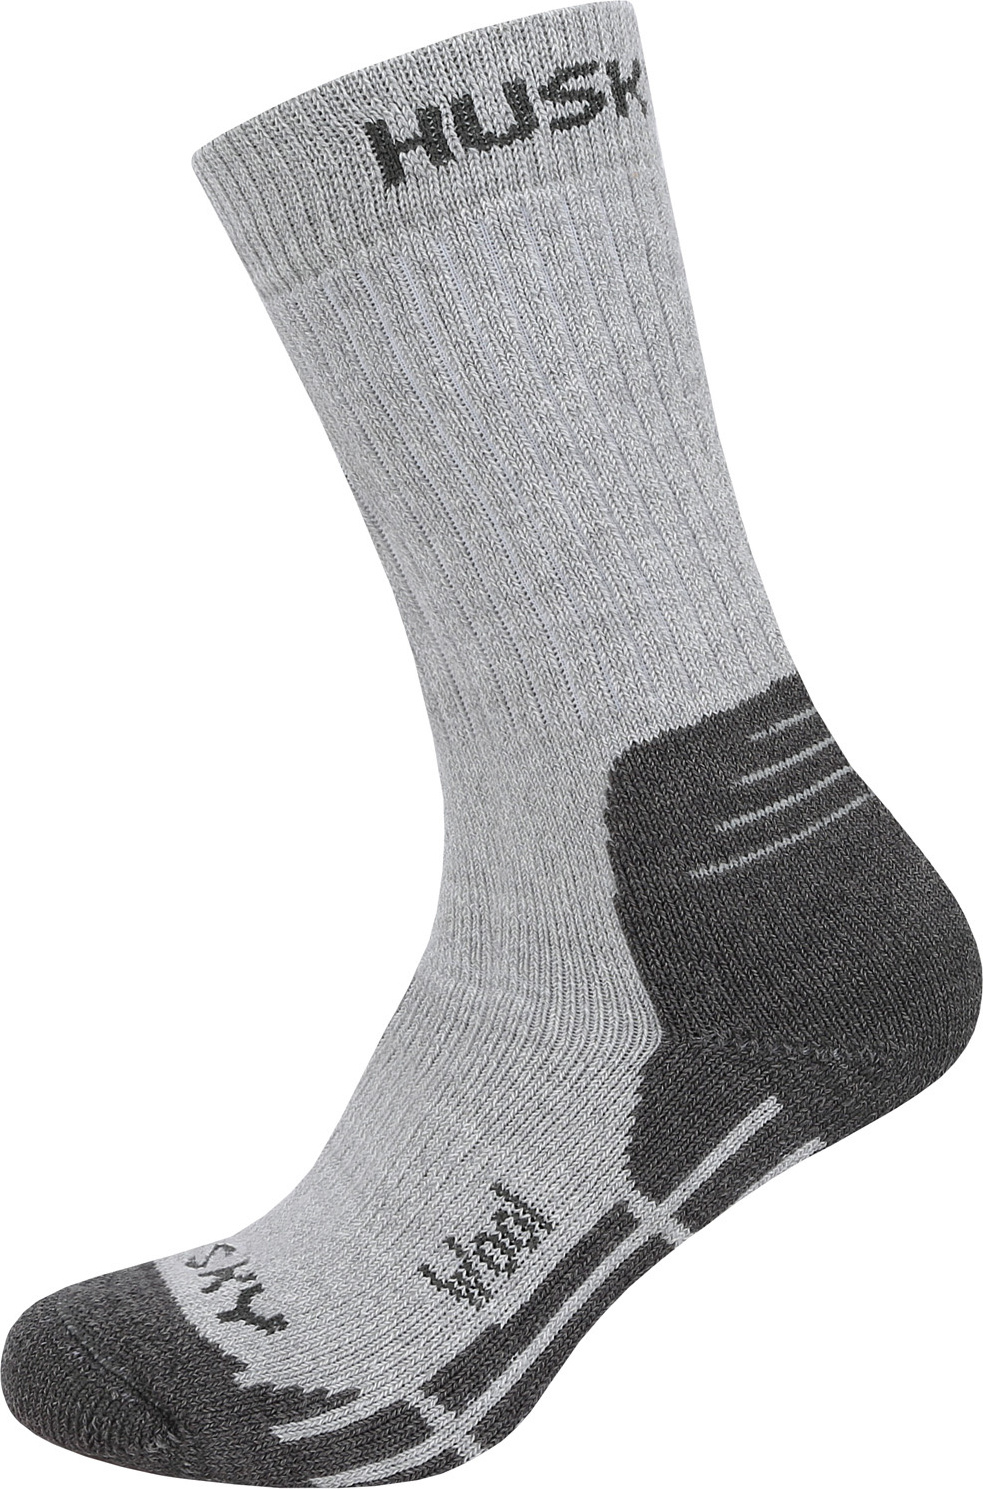 Ponožky HUSKY All Wool sv. šedá Velikost: L (41-44)